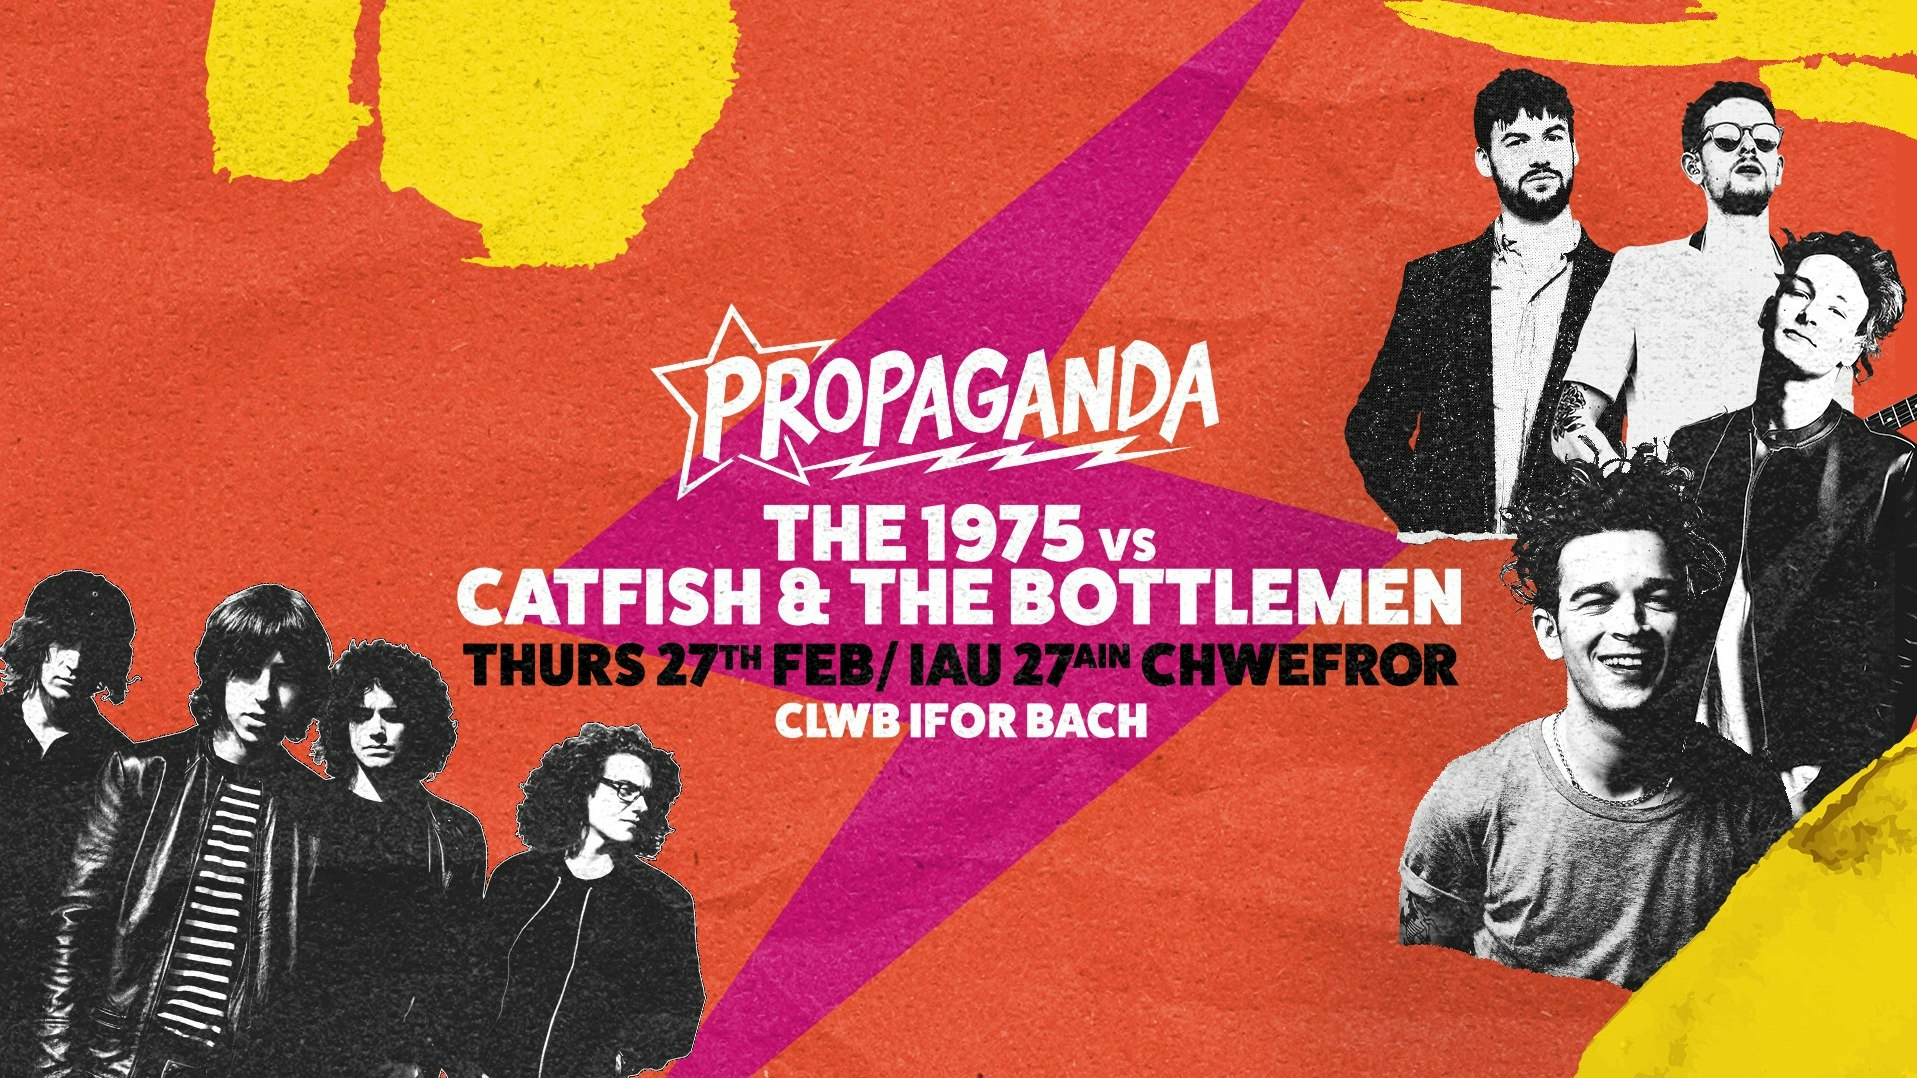 Propaganda Cardiff: The 1975 vs Catfish & The Bottlemen Special!